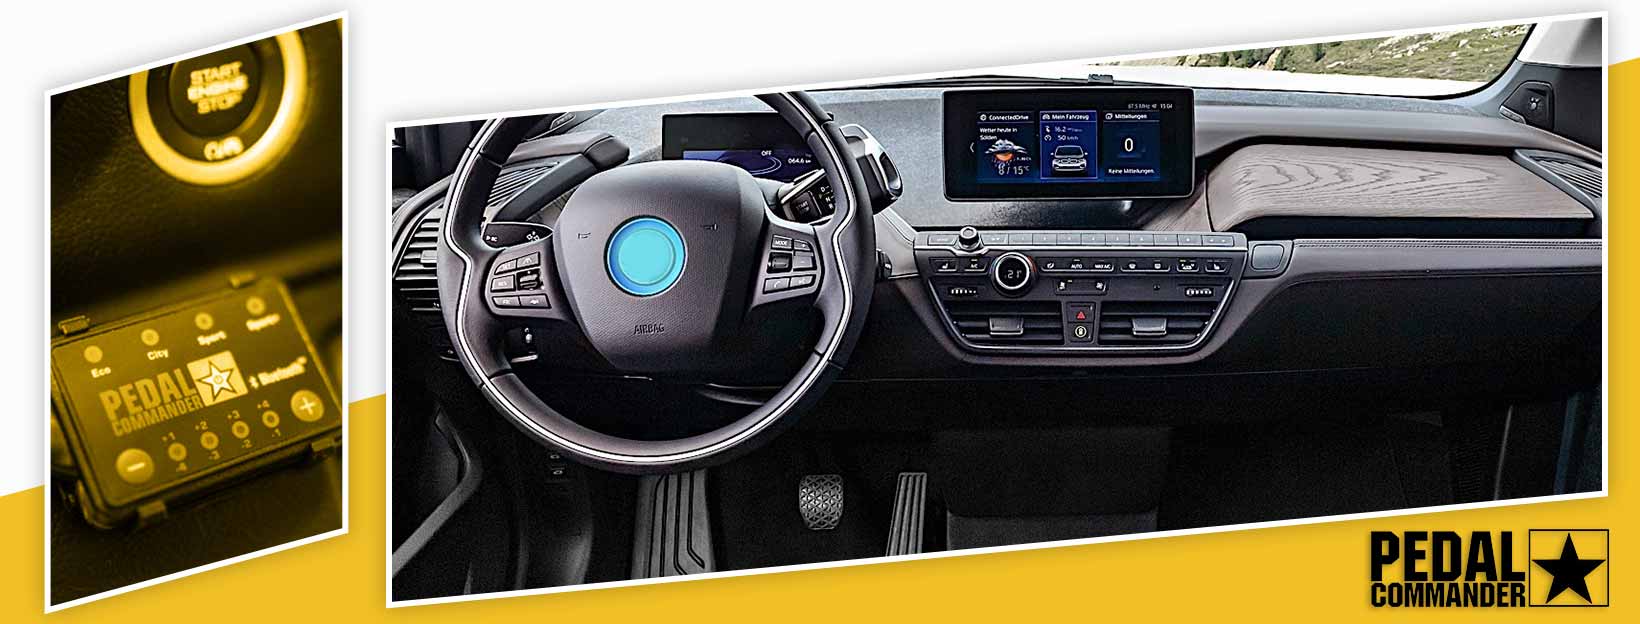 Pedal Commander for BMW i3 - interior